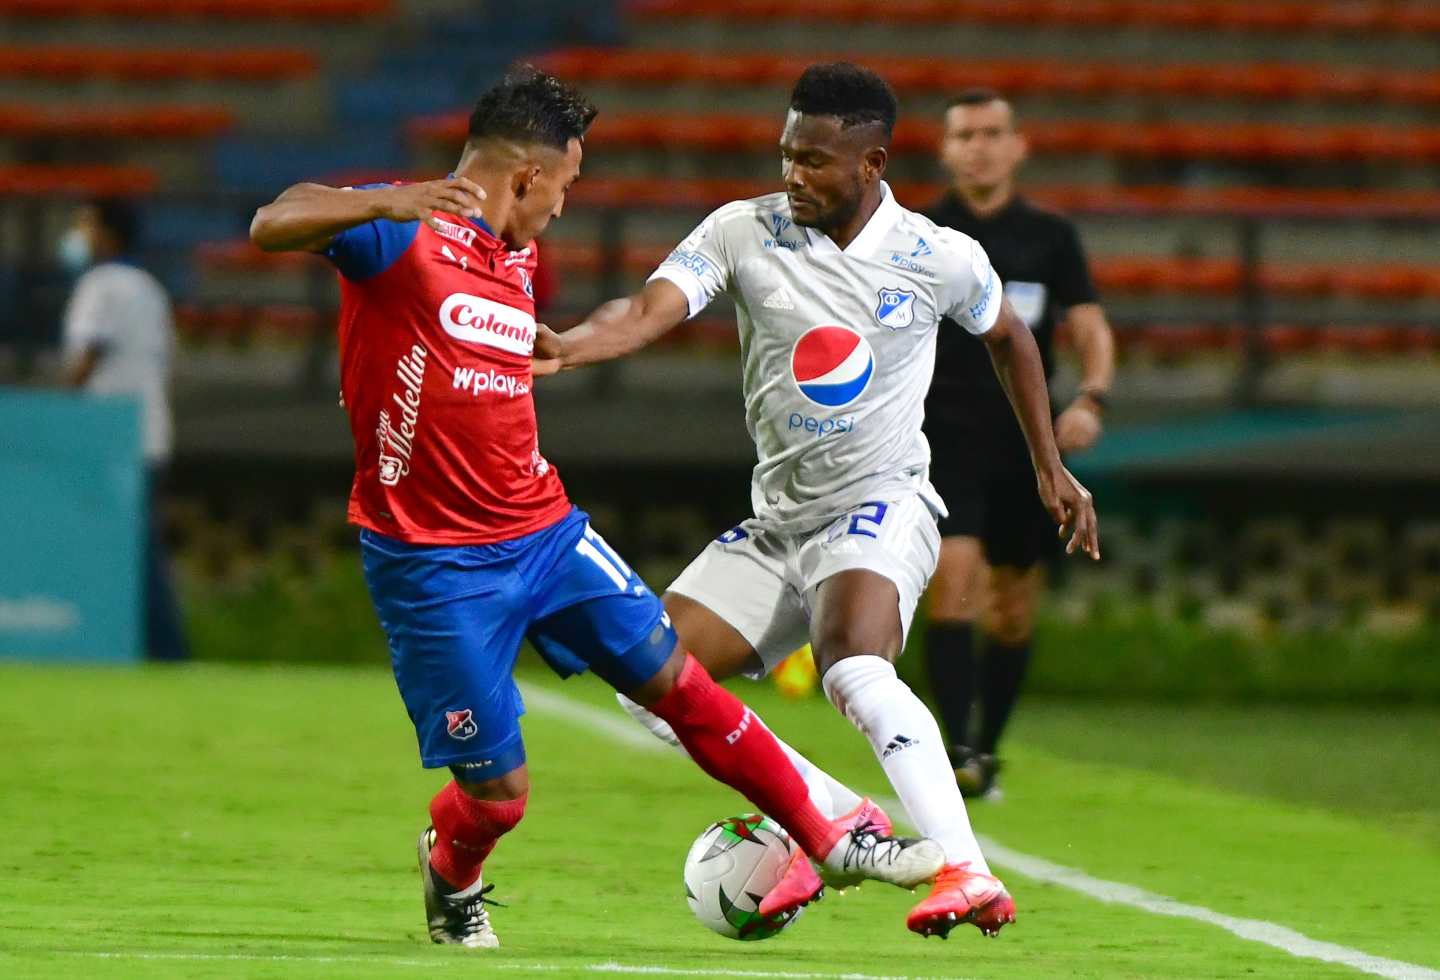 League BetPlay: Medellín and Millonarios empataron en cierre de la fecha 4